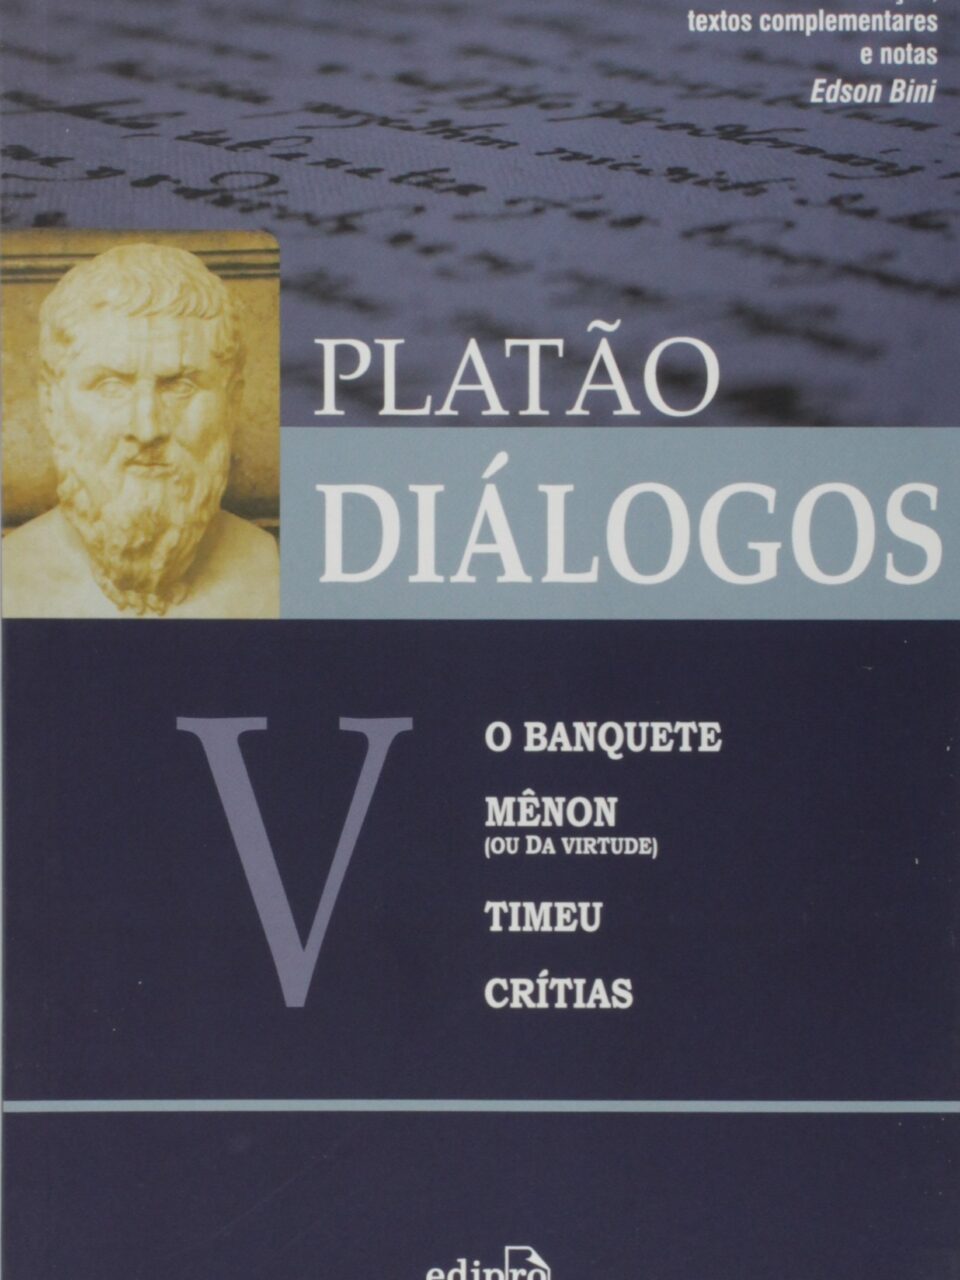 Diálogos V – O Banquete, Mênon, Timeu, Crítias – Platão